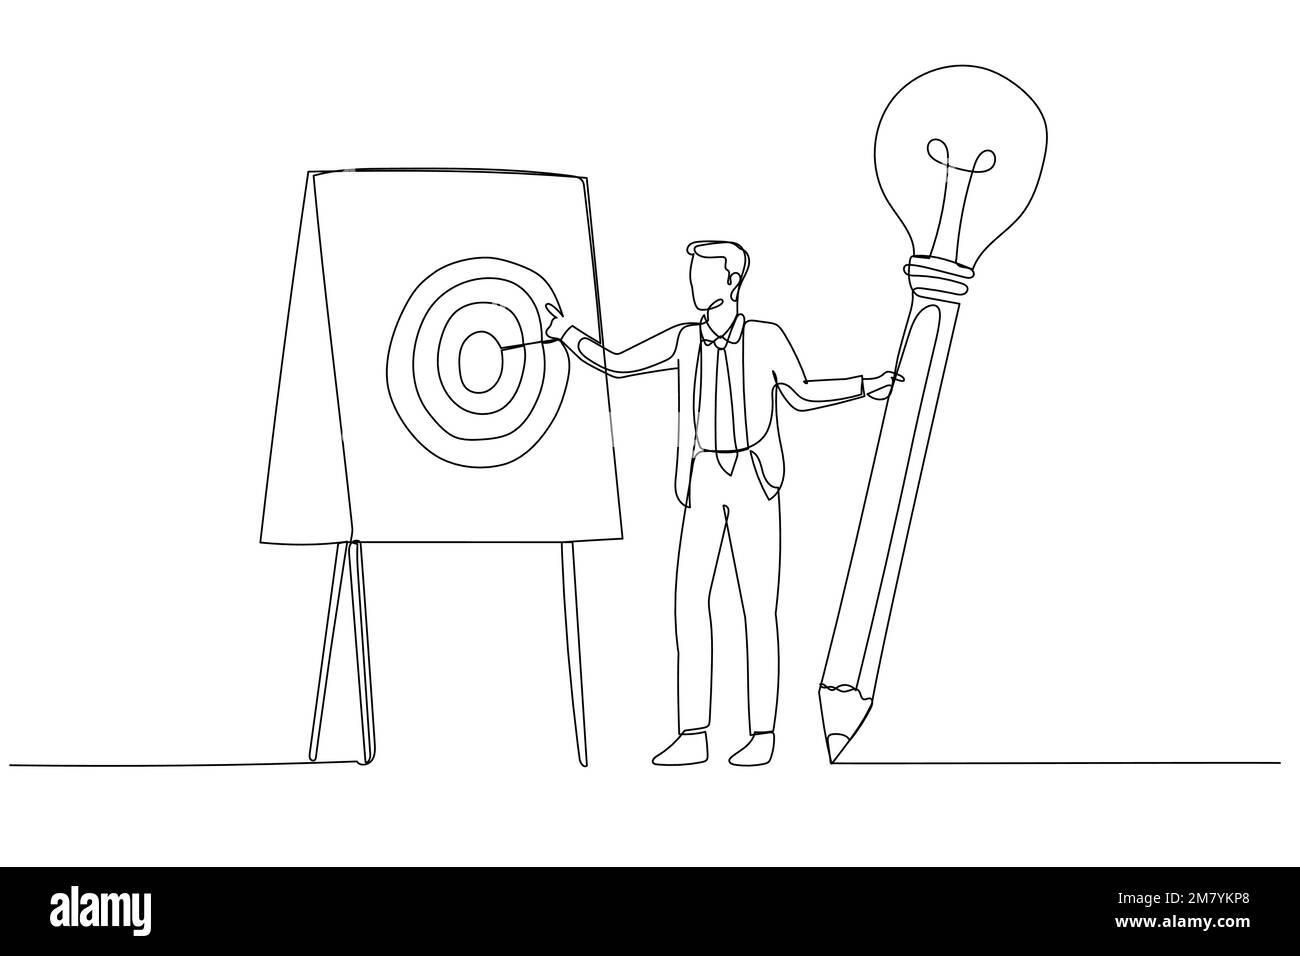 Darstellung eines Geschäftsmanns mit einem Glühbirnen-Ideenstift, der kurz davor steht, ein Strategiekonzept für einen Geschäftsplan zu schreiben. Einzeiliges Kunstdesign Stock Vektor